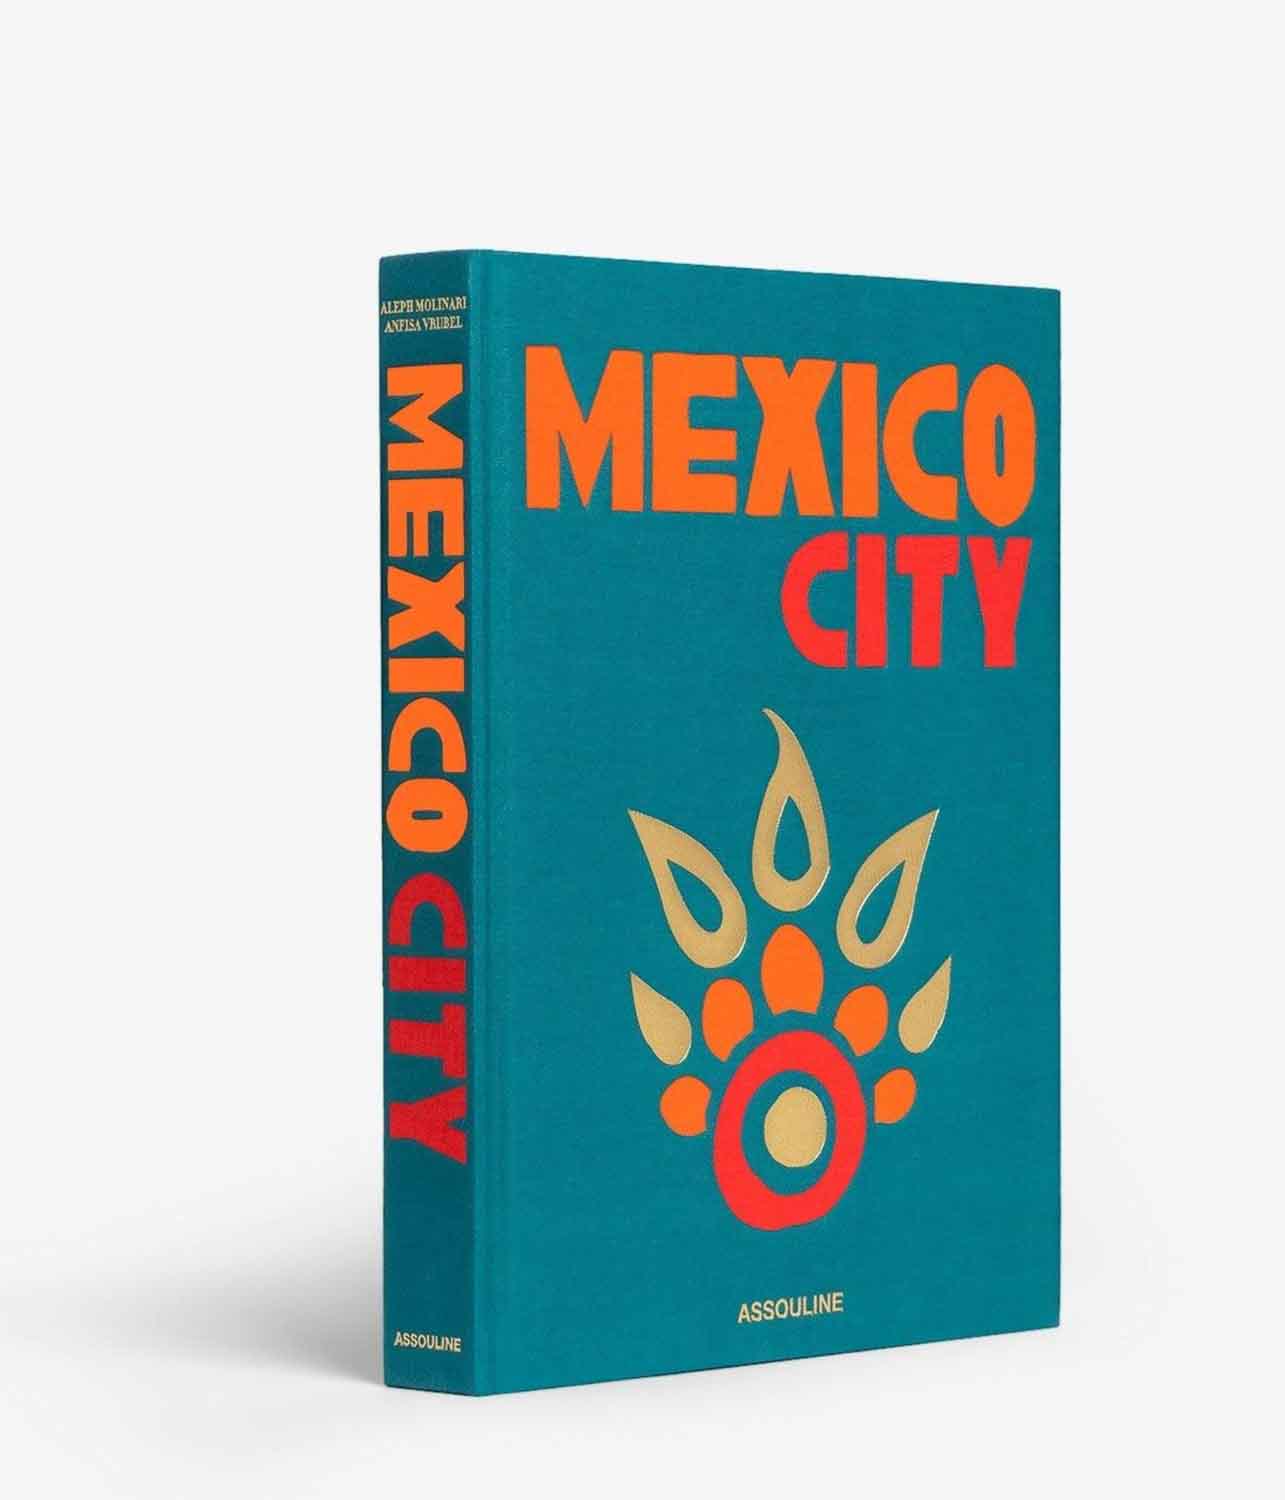 Bildgewaltiges Buch über Mexiko-Stadt